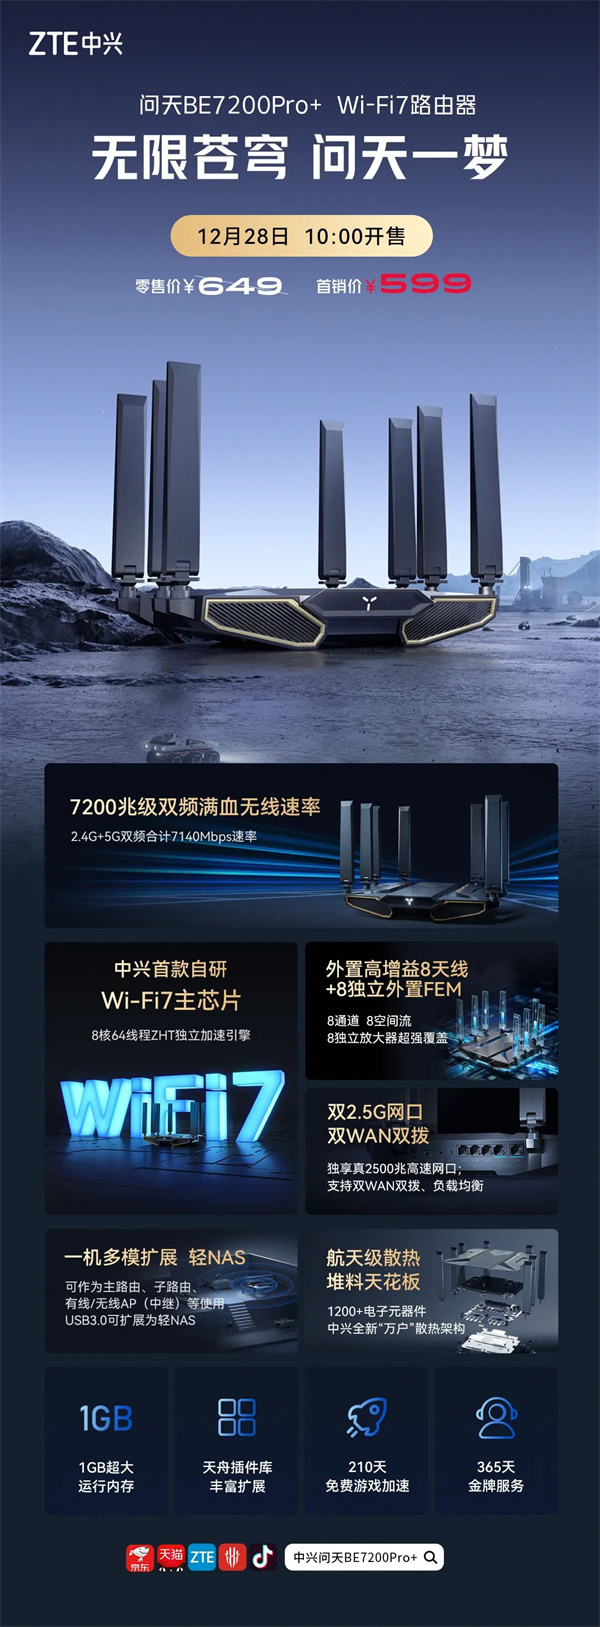 中兴首款 WiFi 7 路由器问天 BE7200 Pro+ 开售